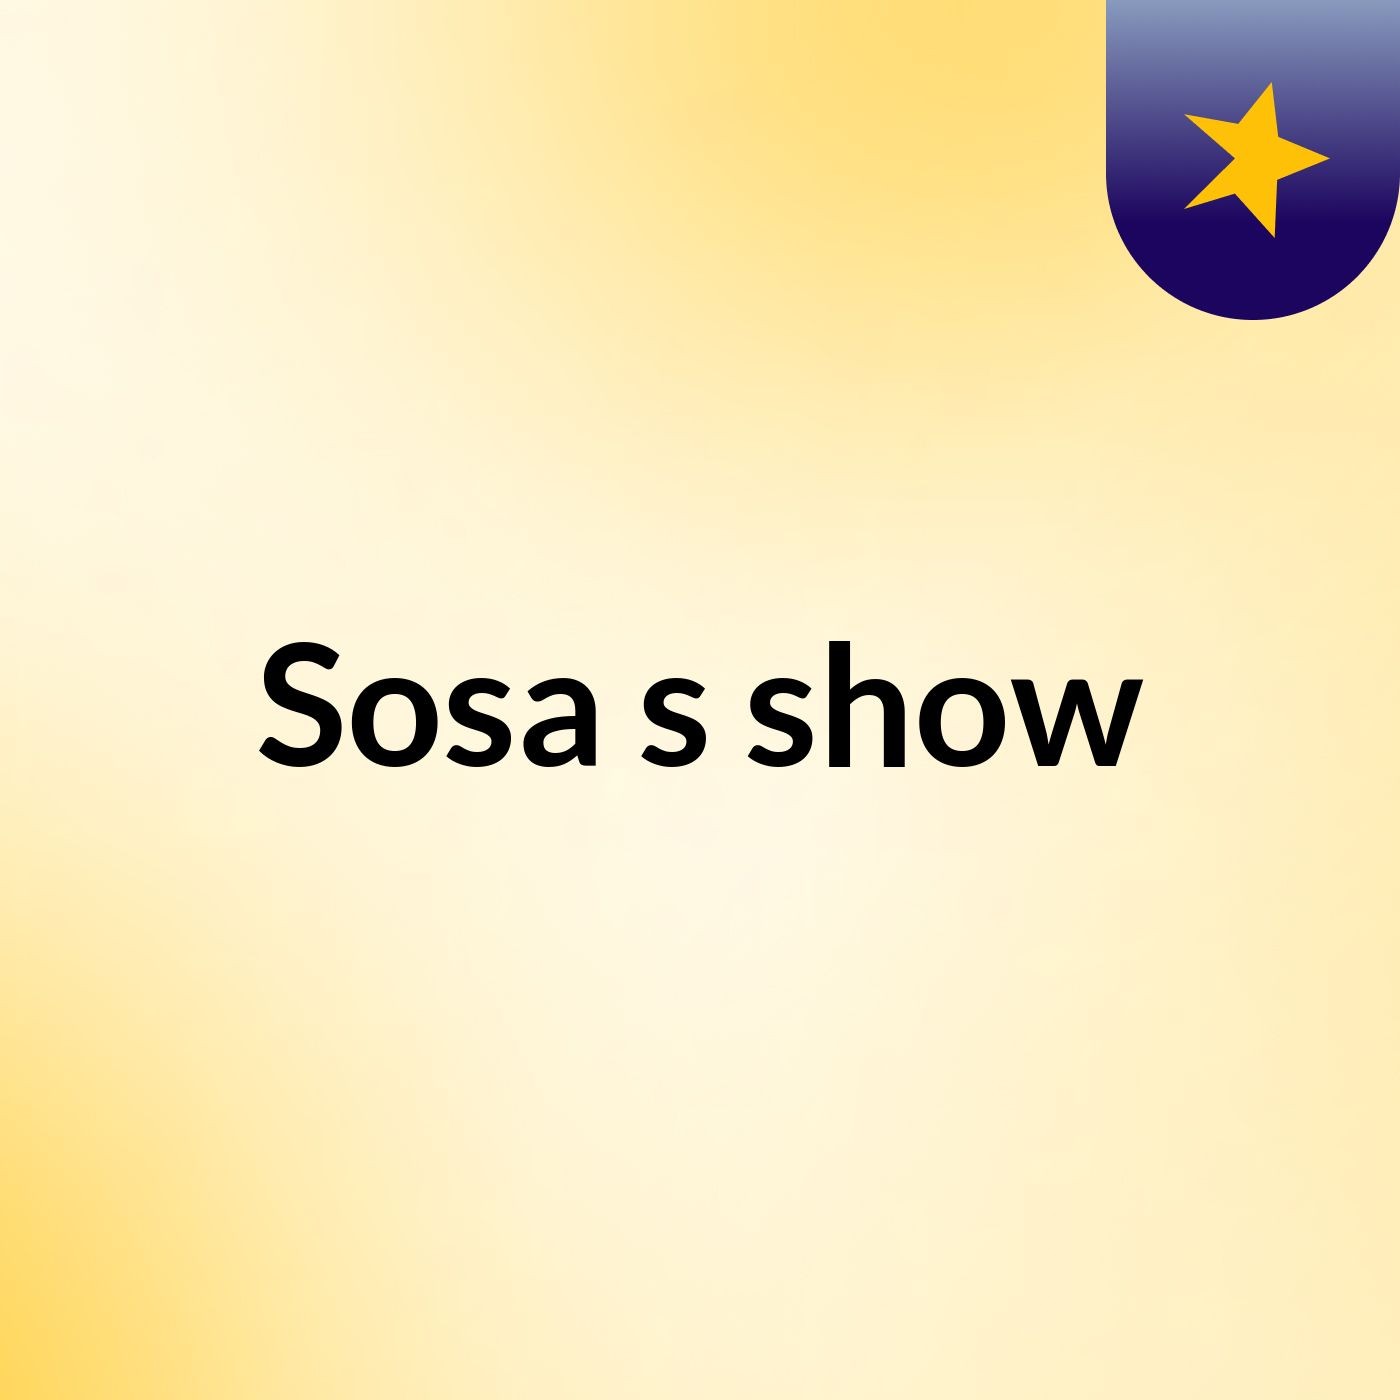 Sosa's show